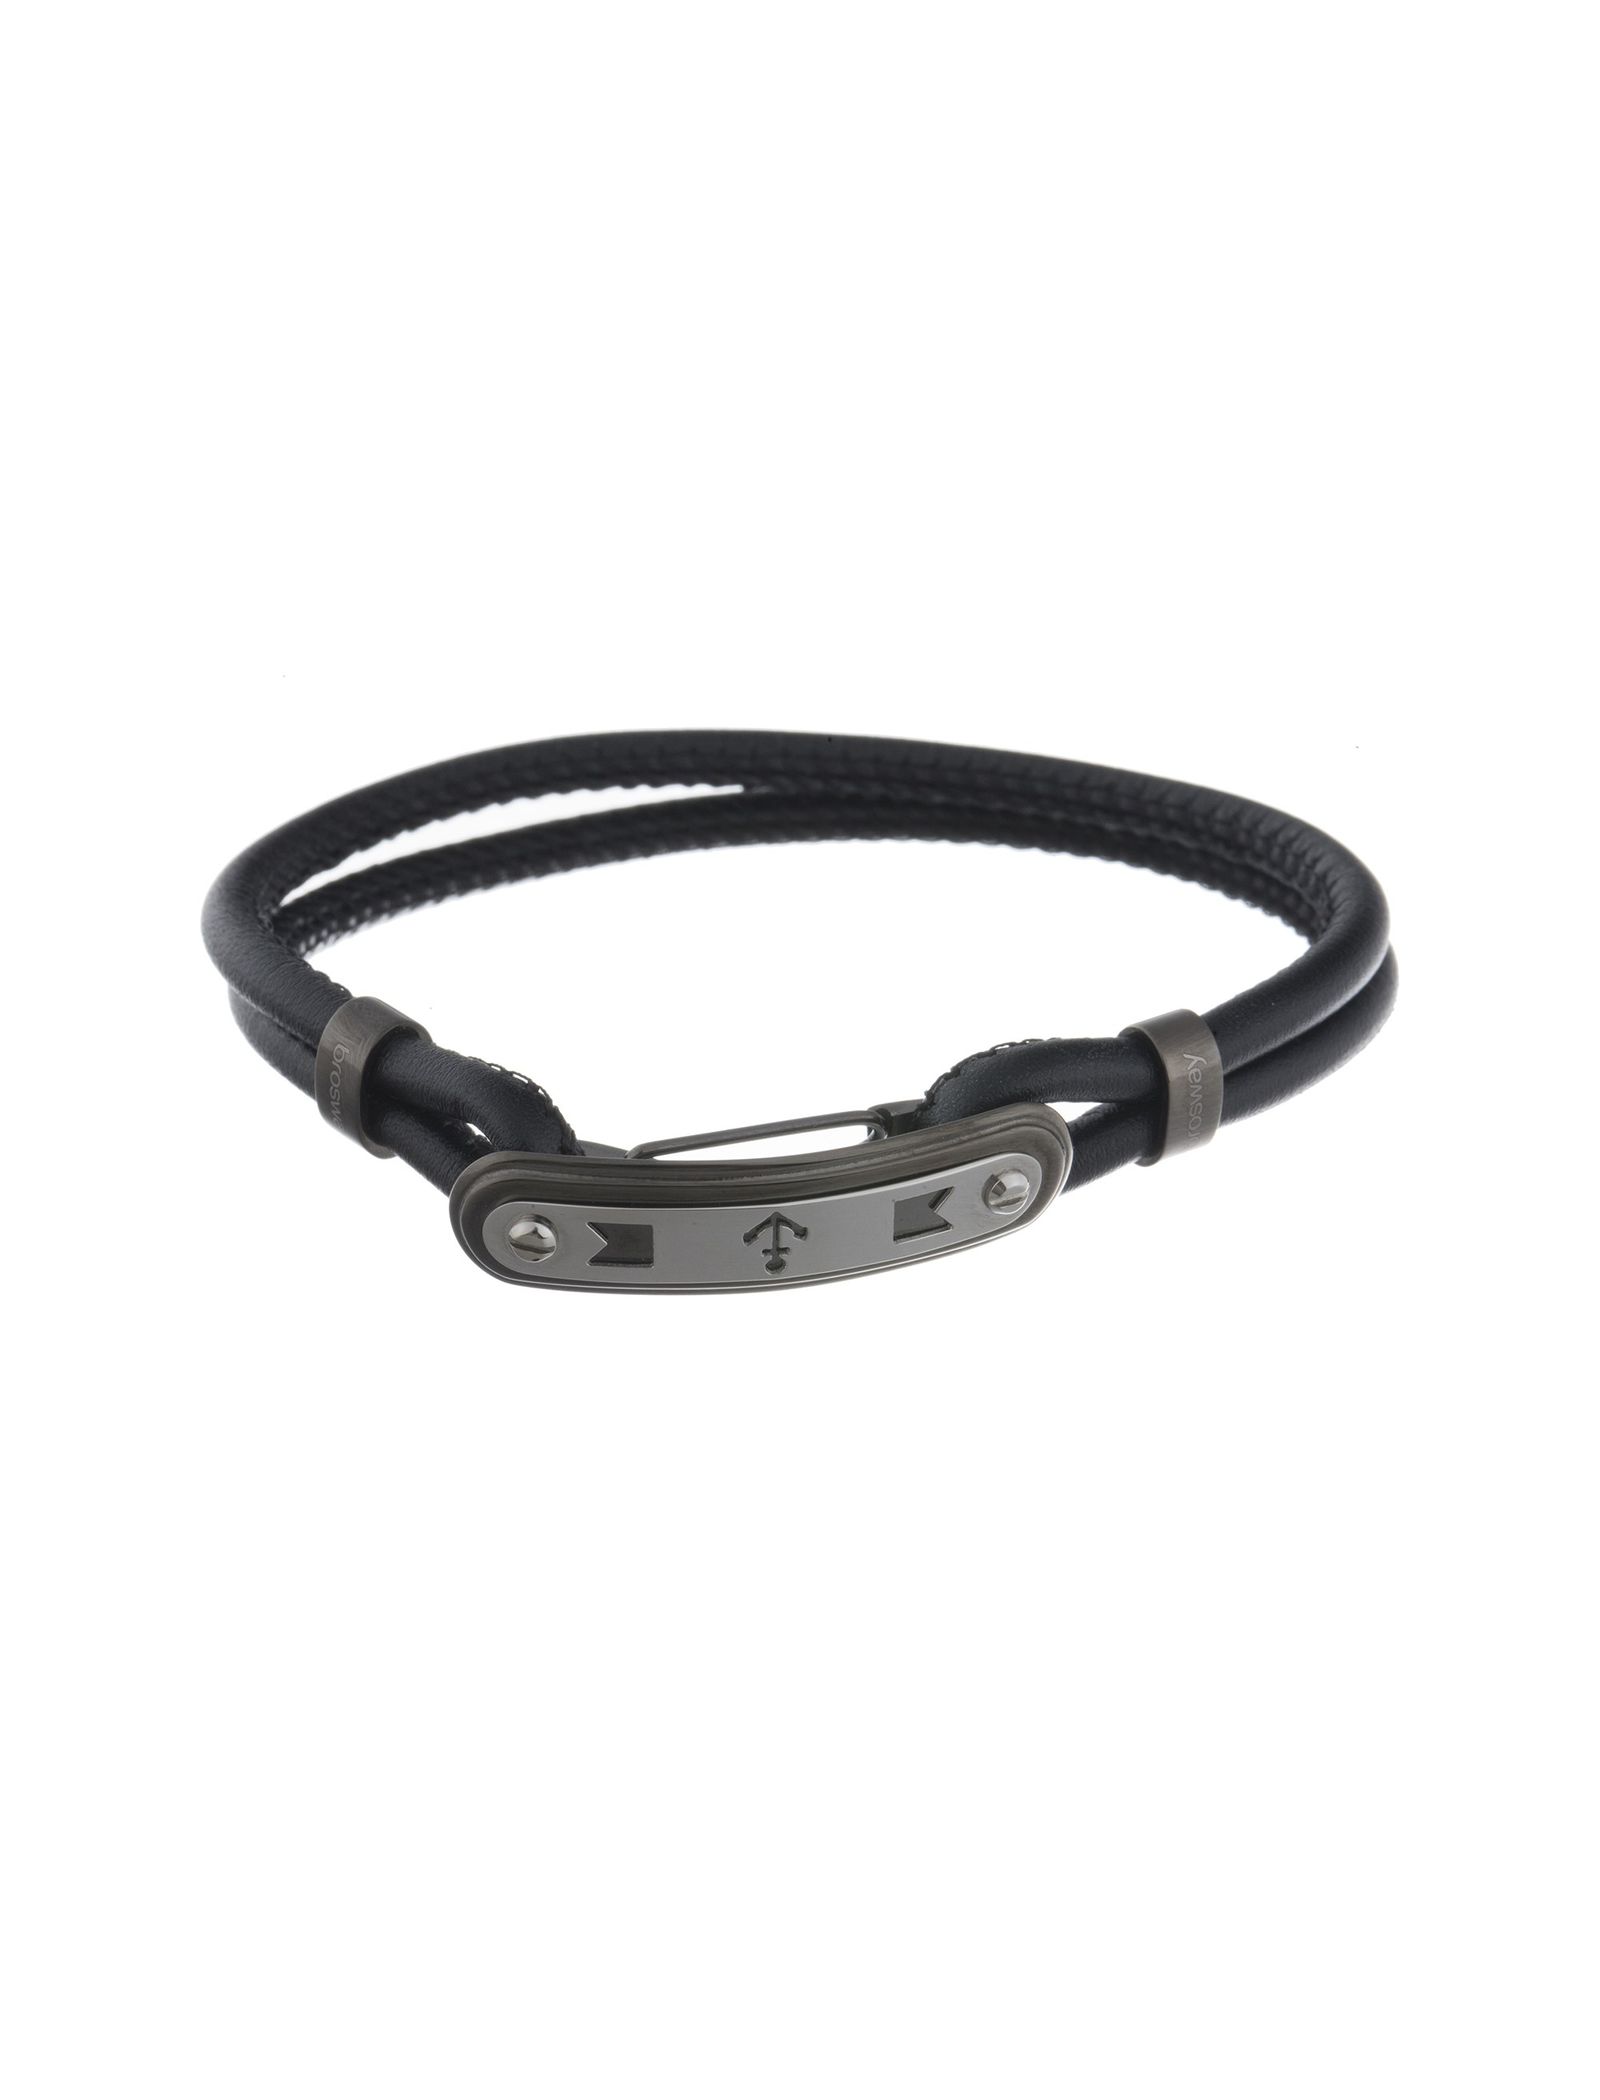 دستبند چرمی مردانه - برازوی - Black - 2